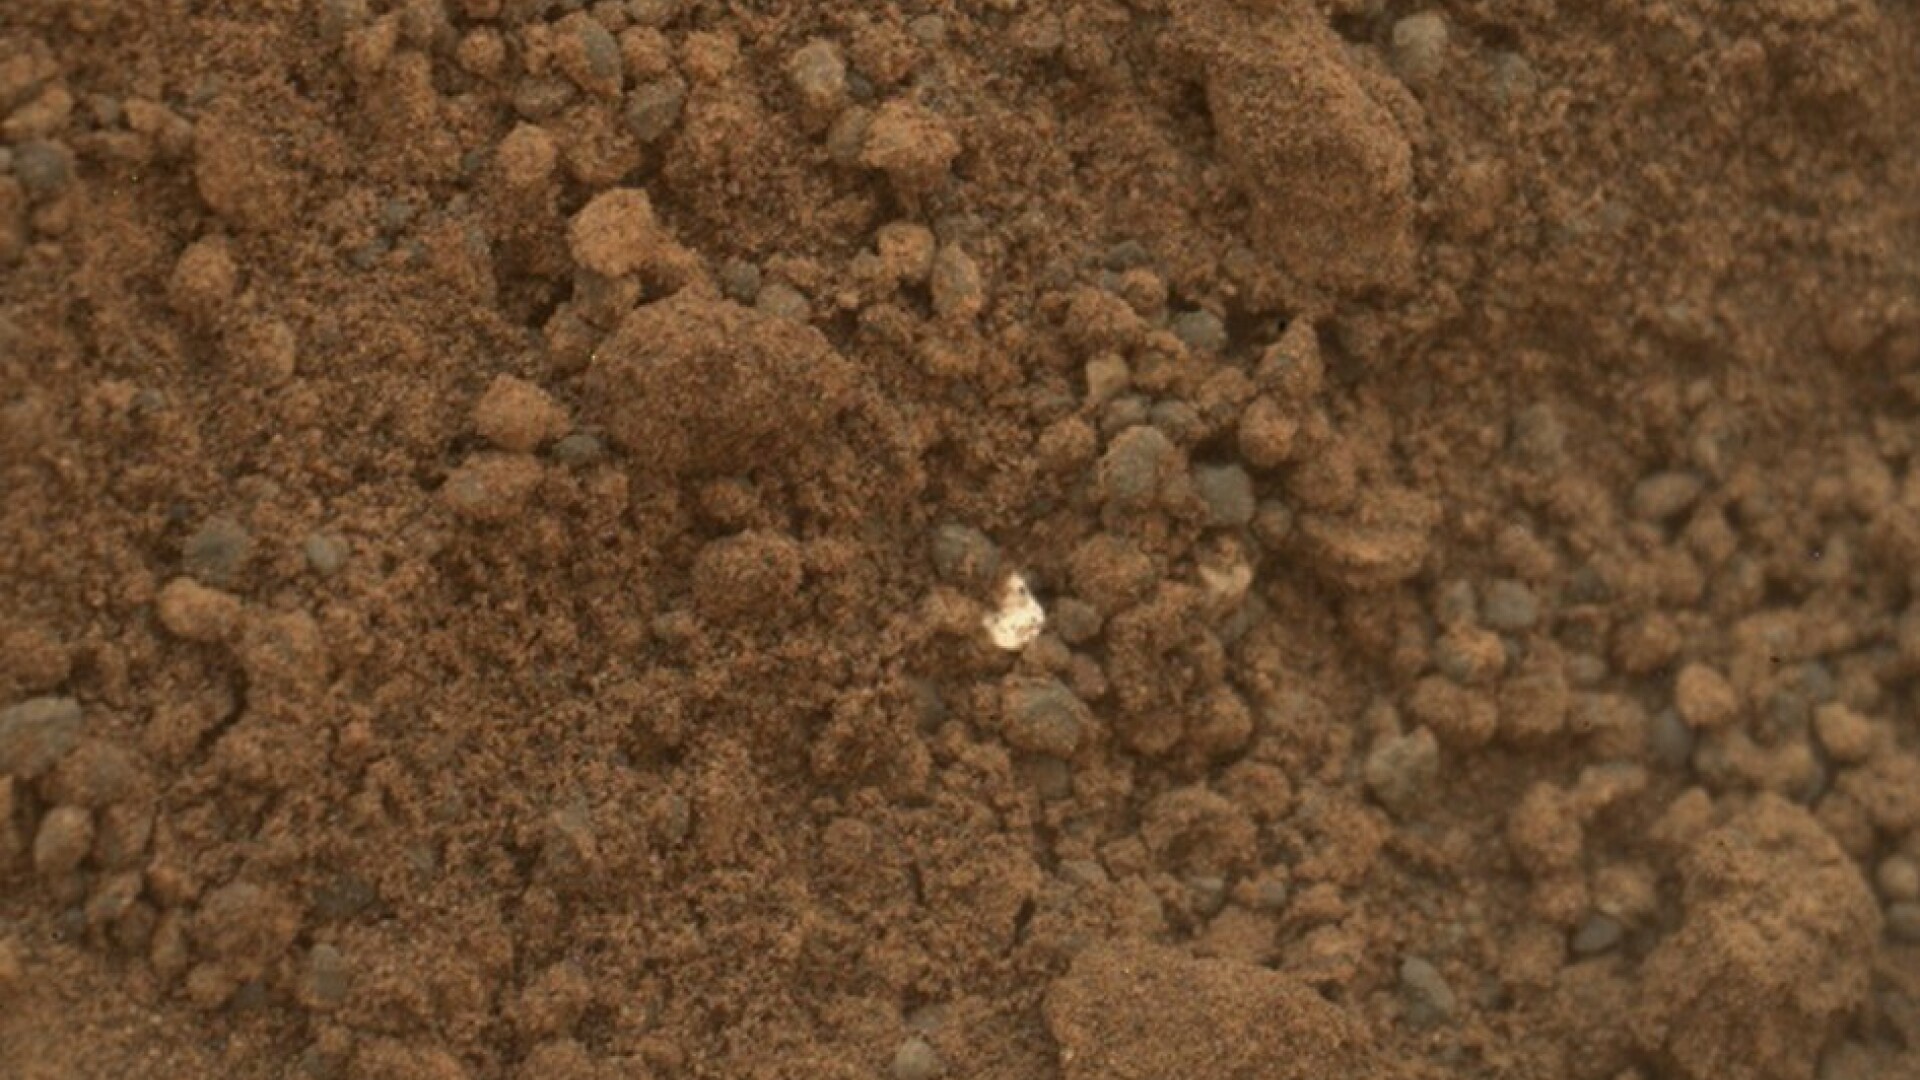 obiect stralucitor pe Marte